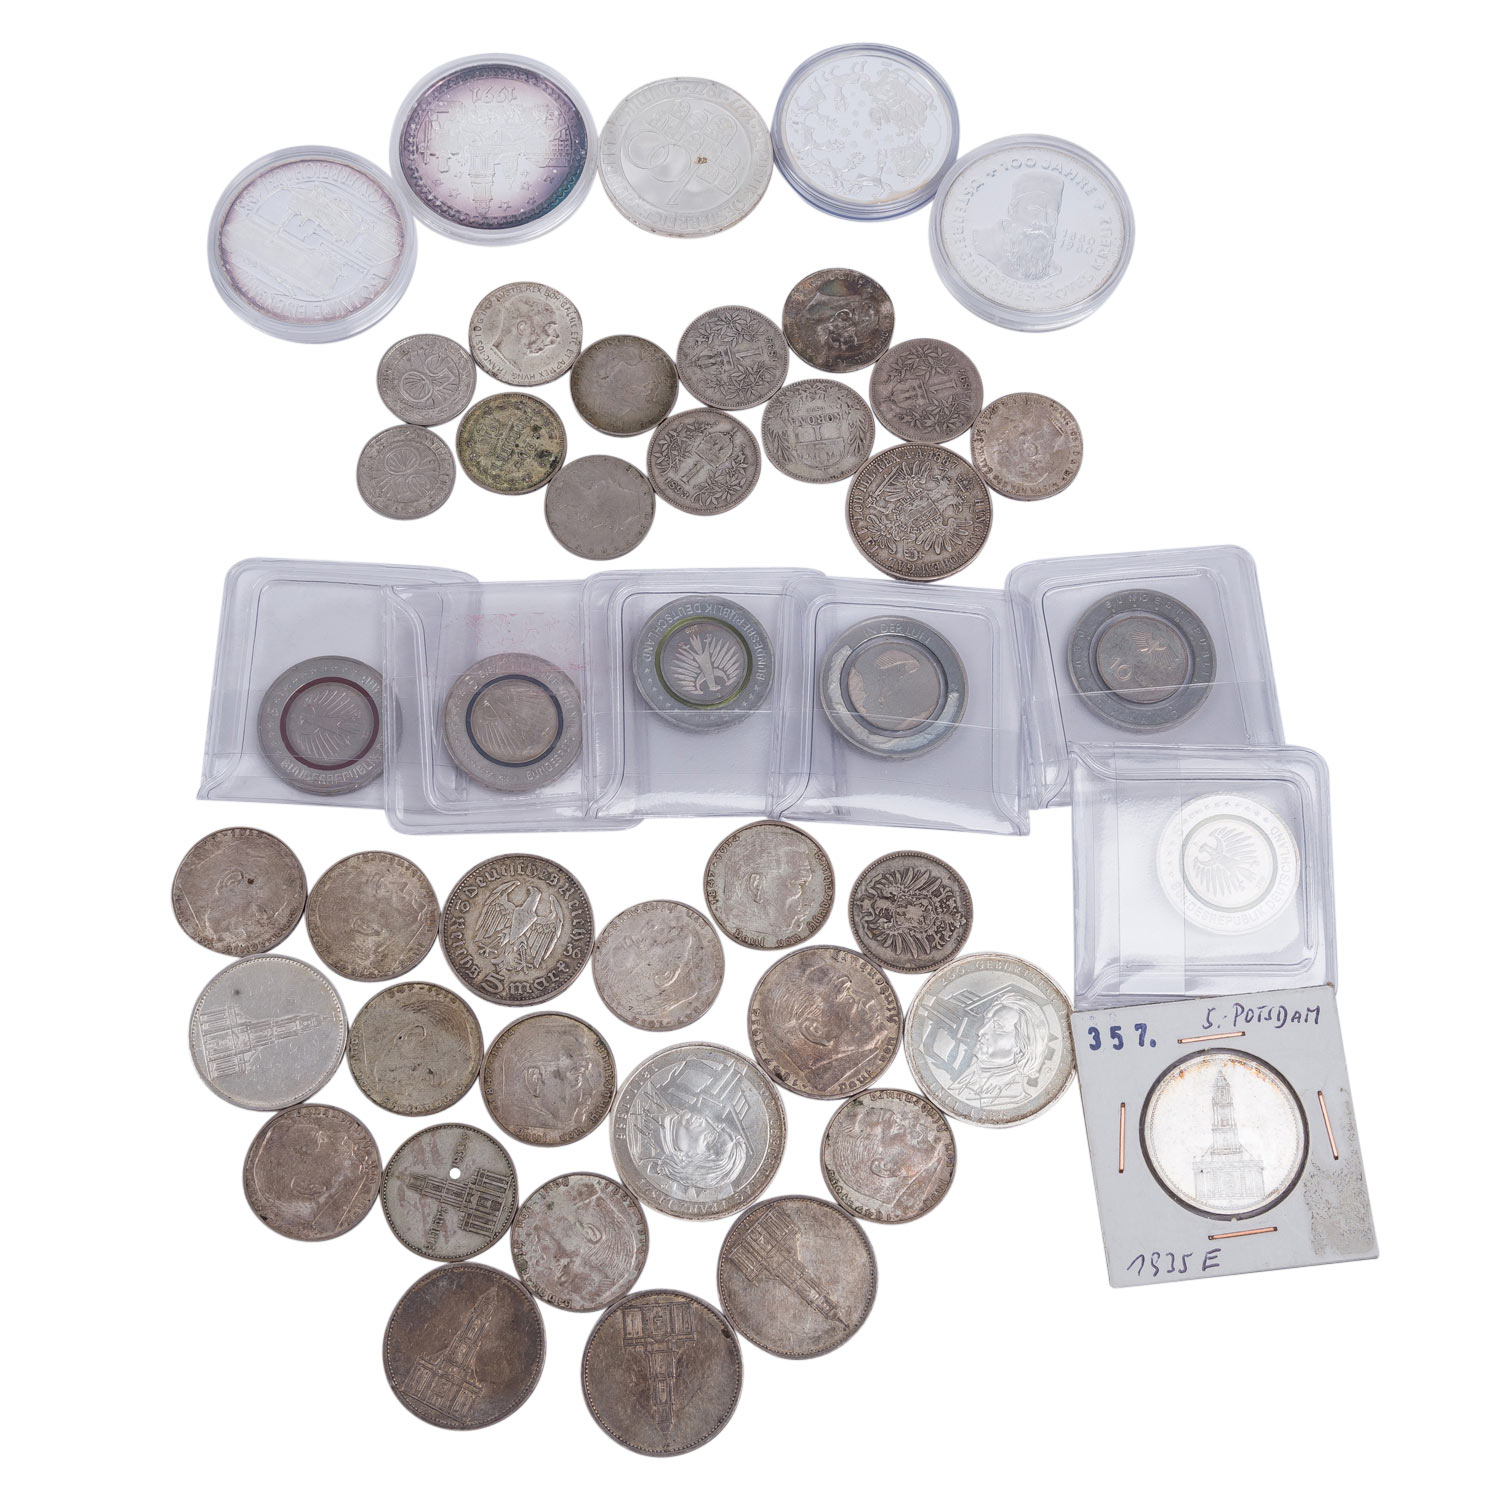 Gemischtes Silber-Konvolut mit Münzen und Medaillen. Ca. 115 Stück. - Image 4 of 9